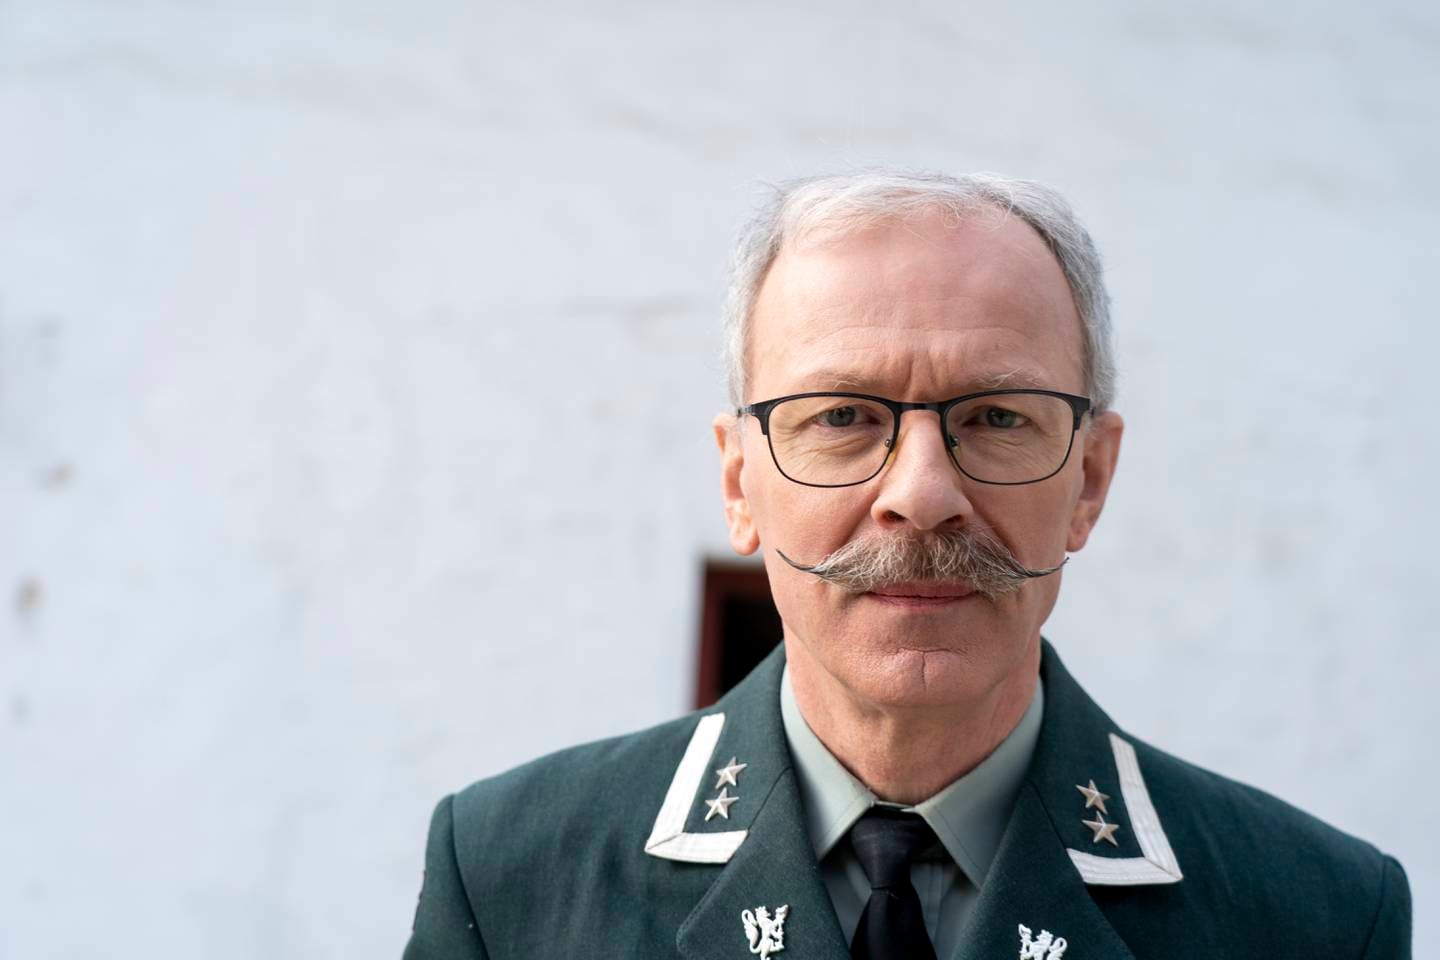 Oberstløytnant Palle Ydstebø er hovedlærer på Krigsskolen.
Foto: Terje Pedersen / NTB